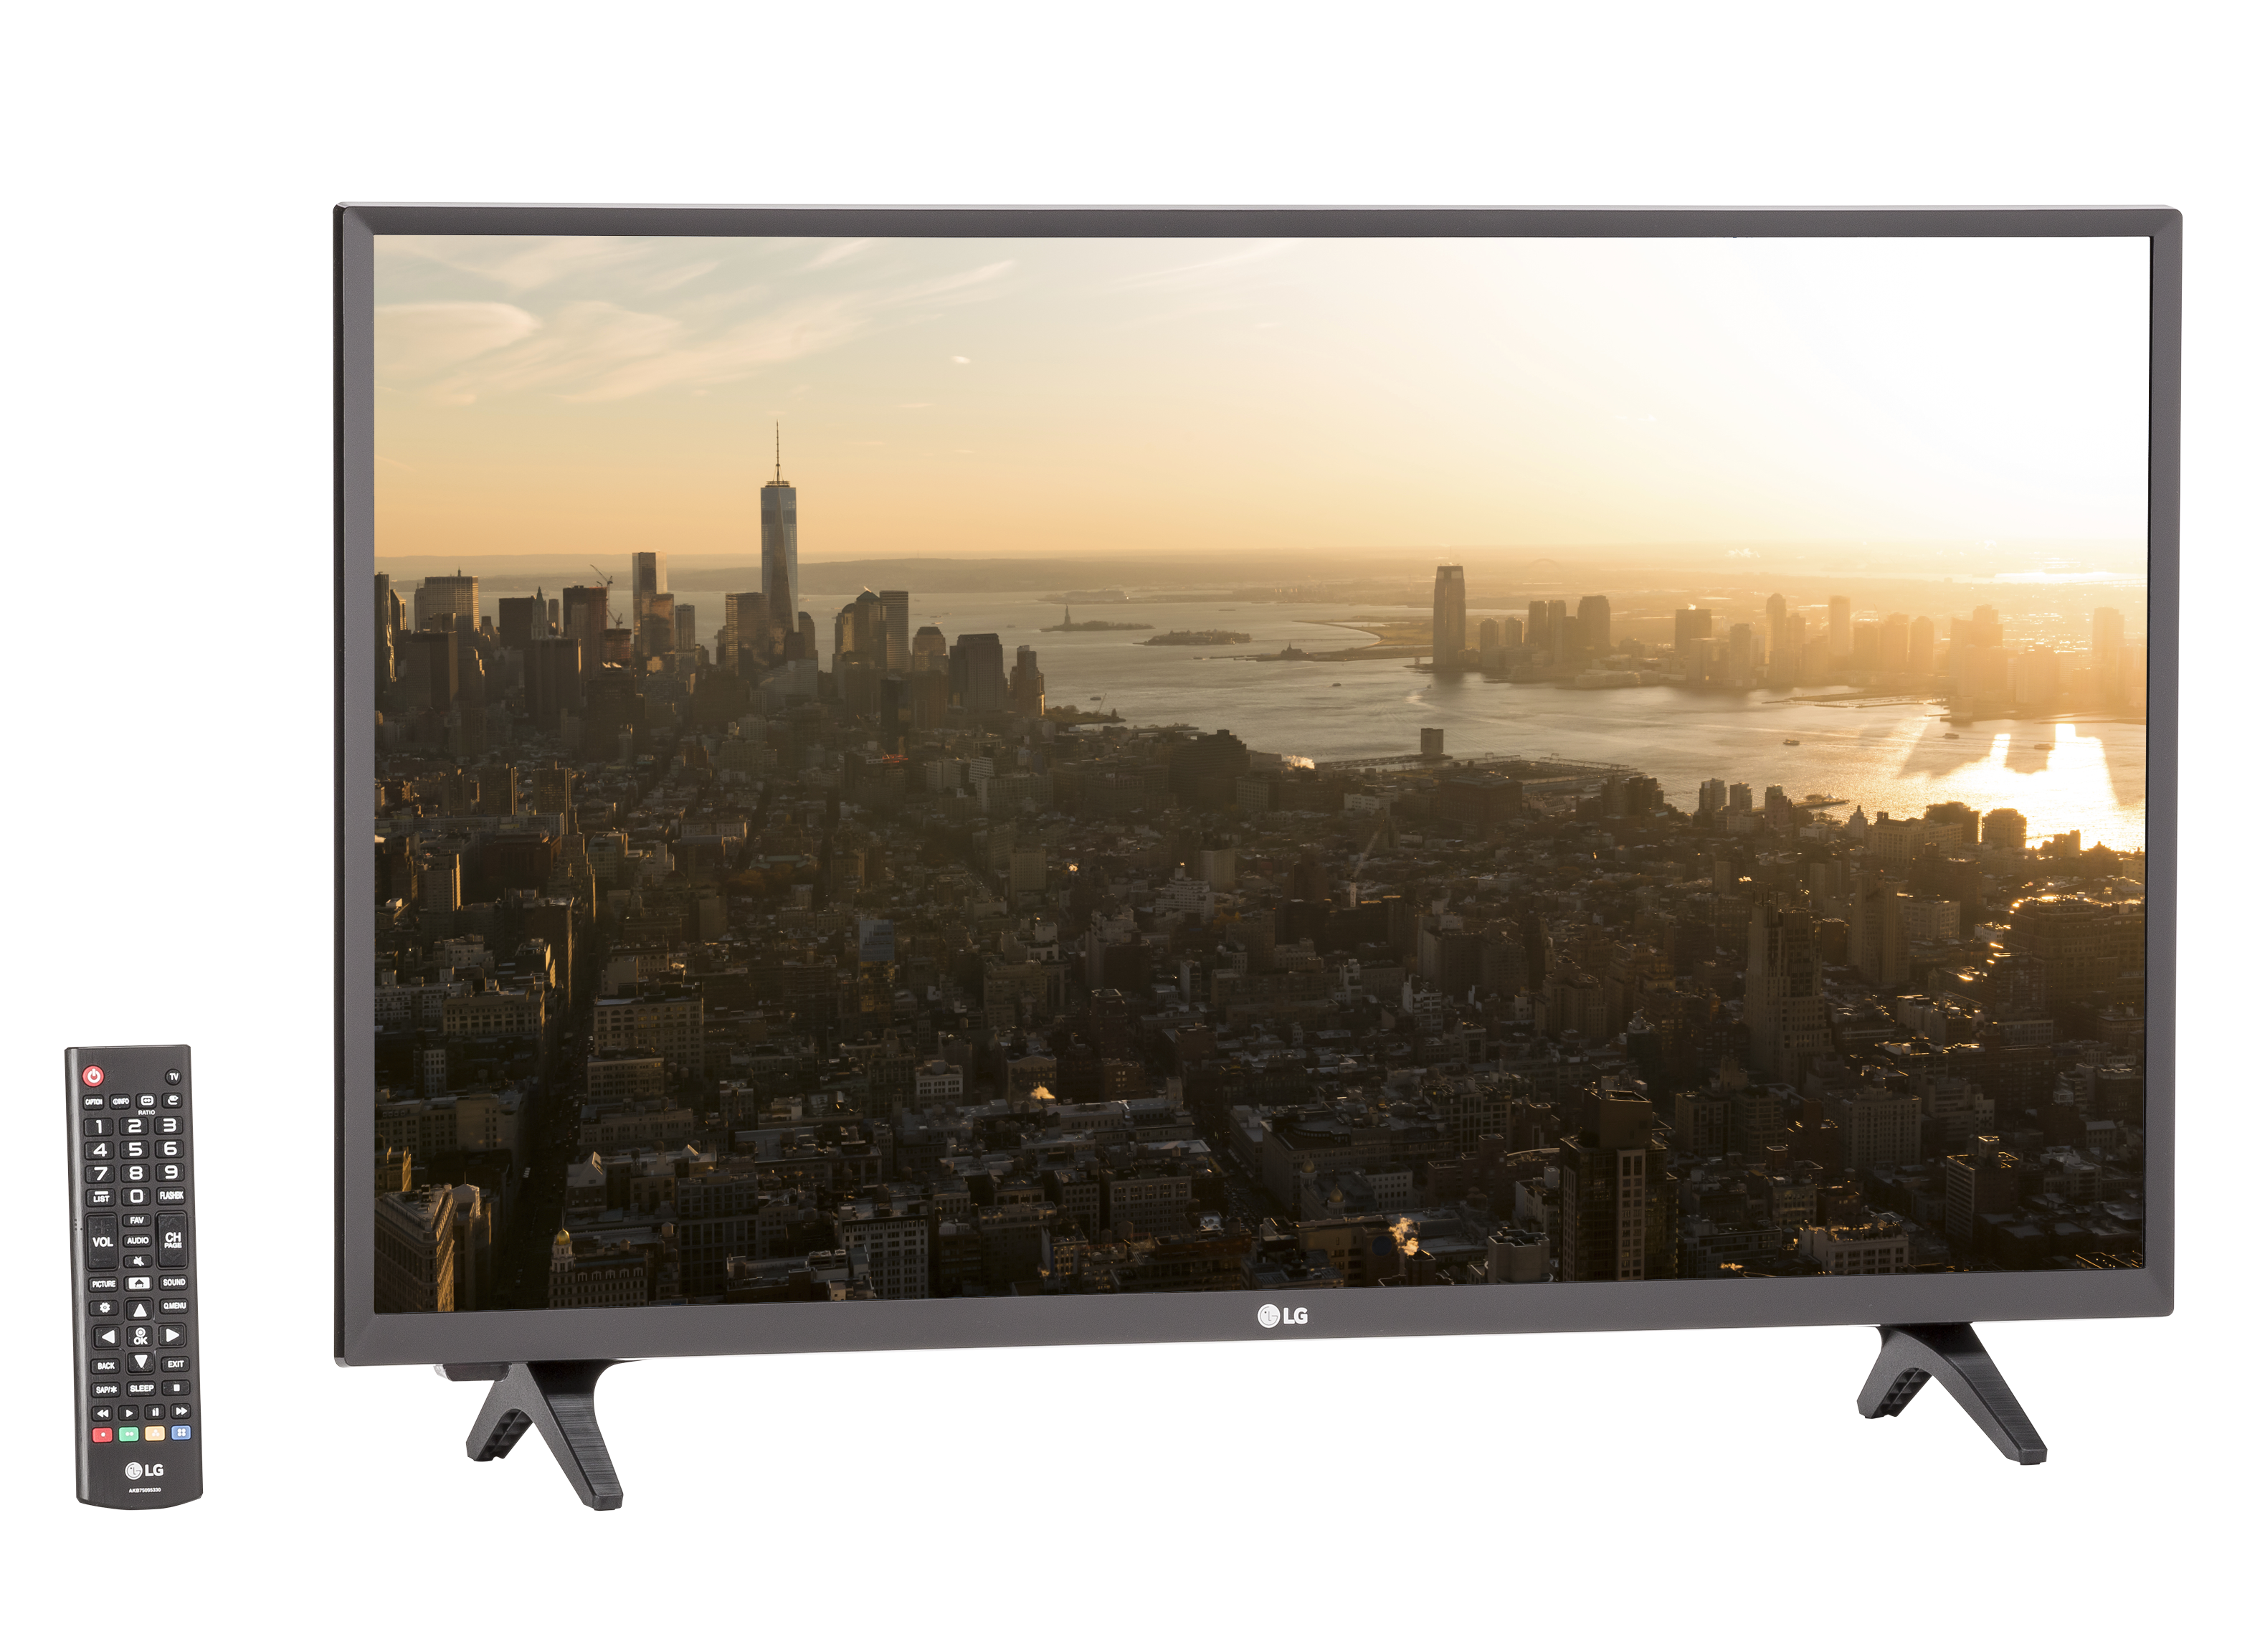 Телевизор led LG 32lj500v. LG 32lg519u. Led телевизор 32" LG 32lq630b6la. LG 32lj519u led (2017). Led lg 32lq630b6la